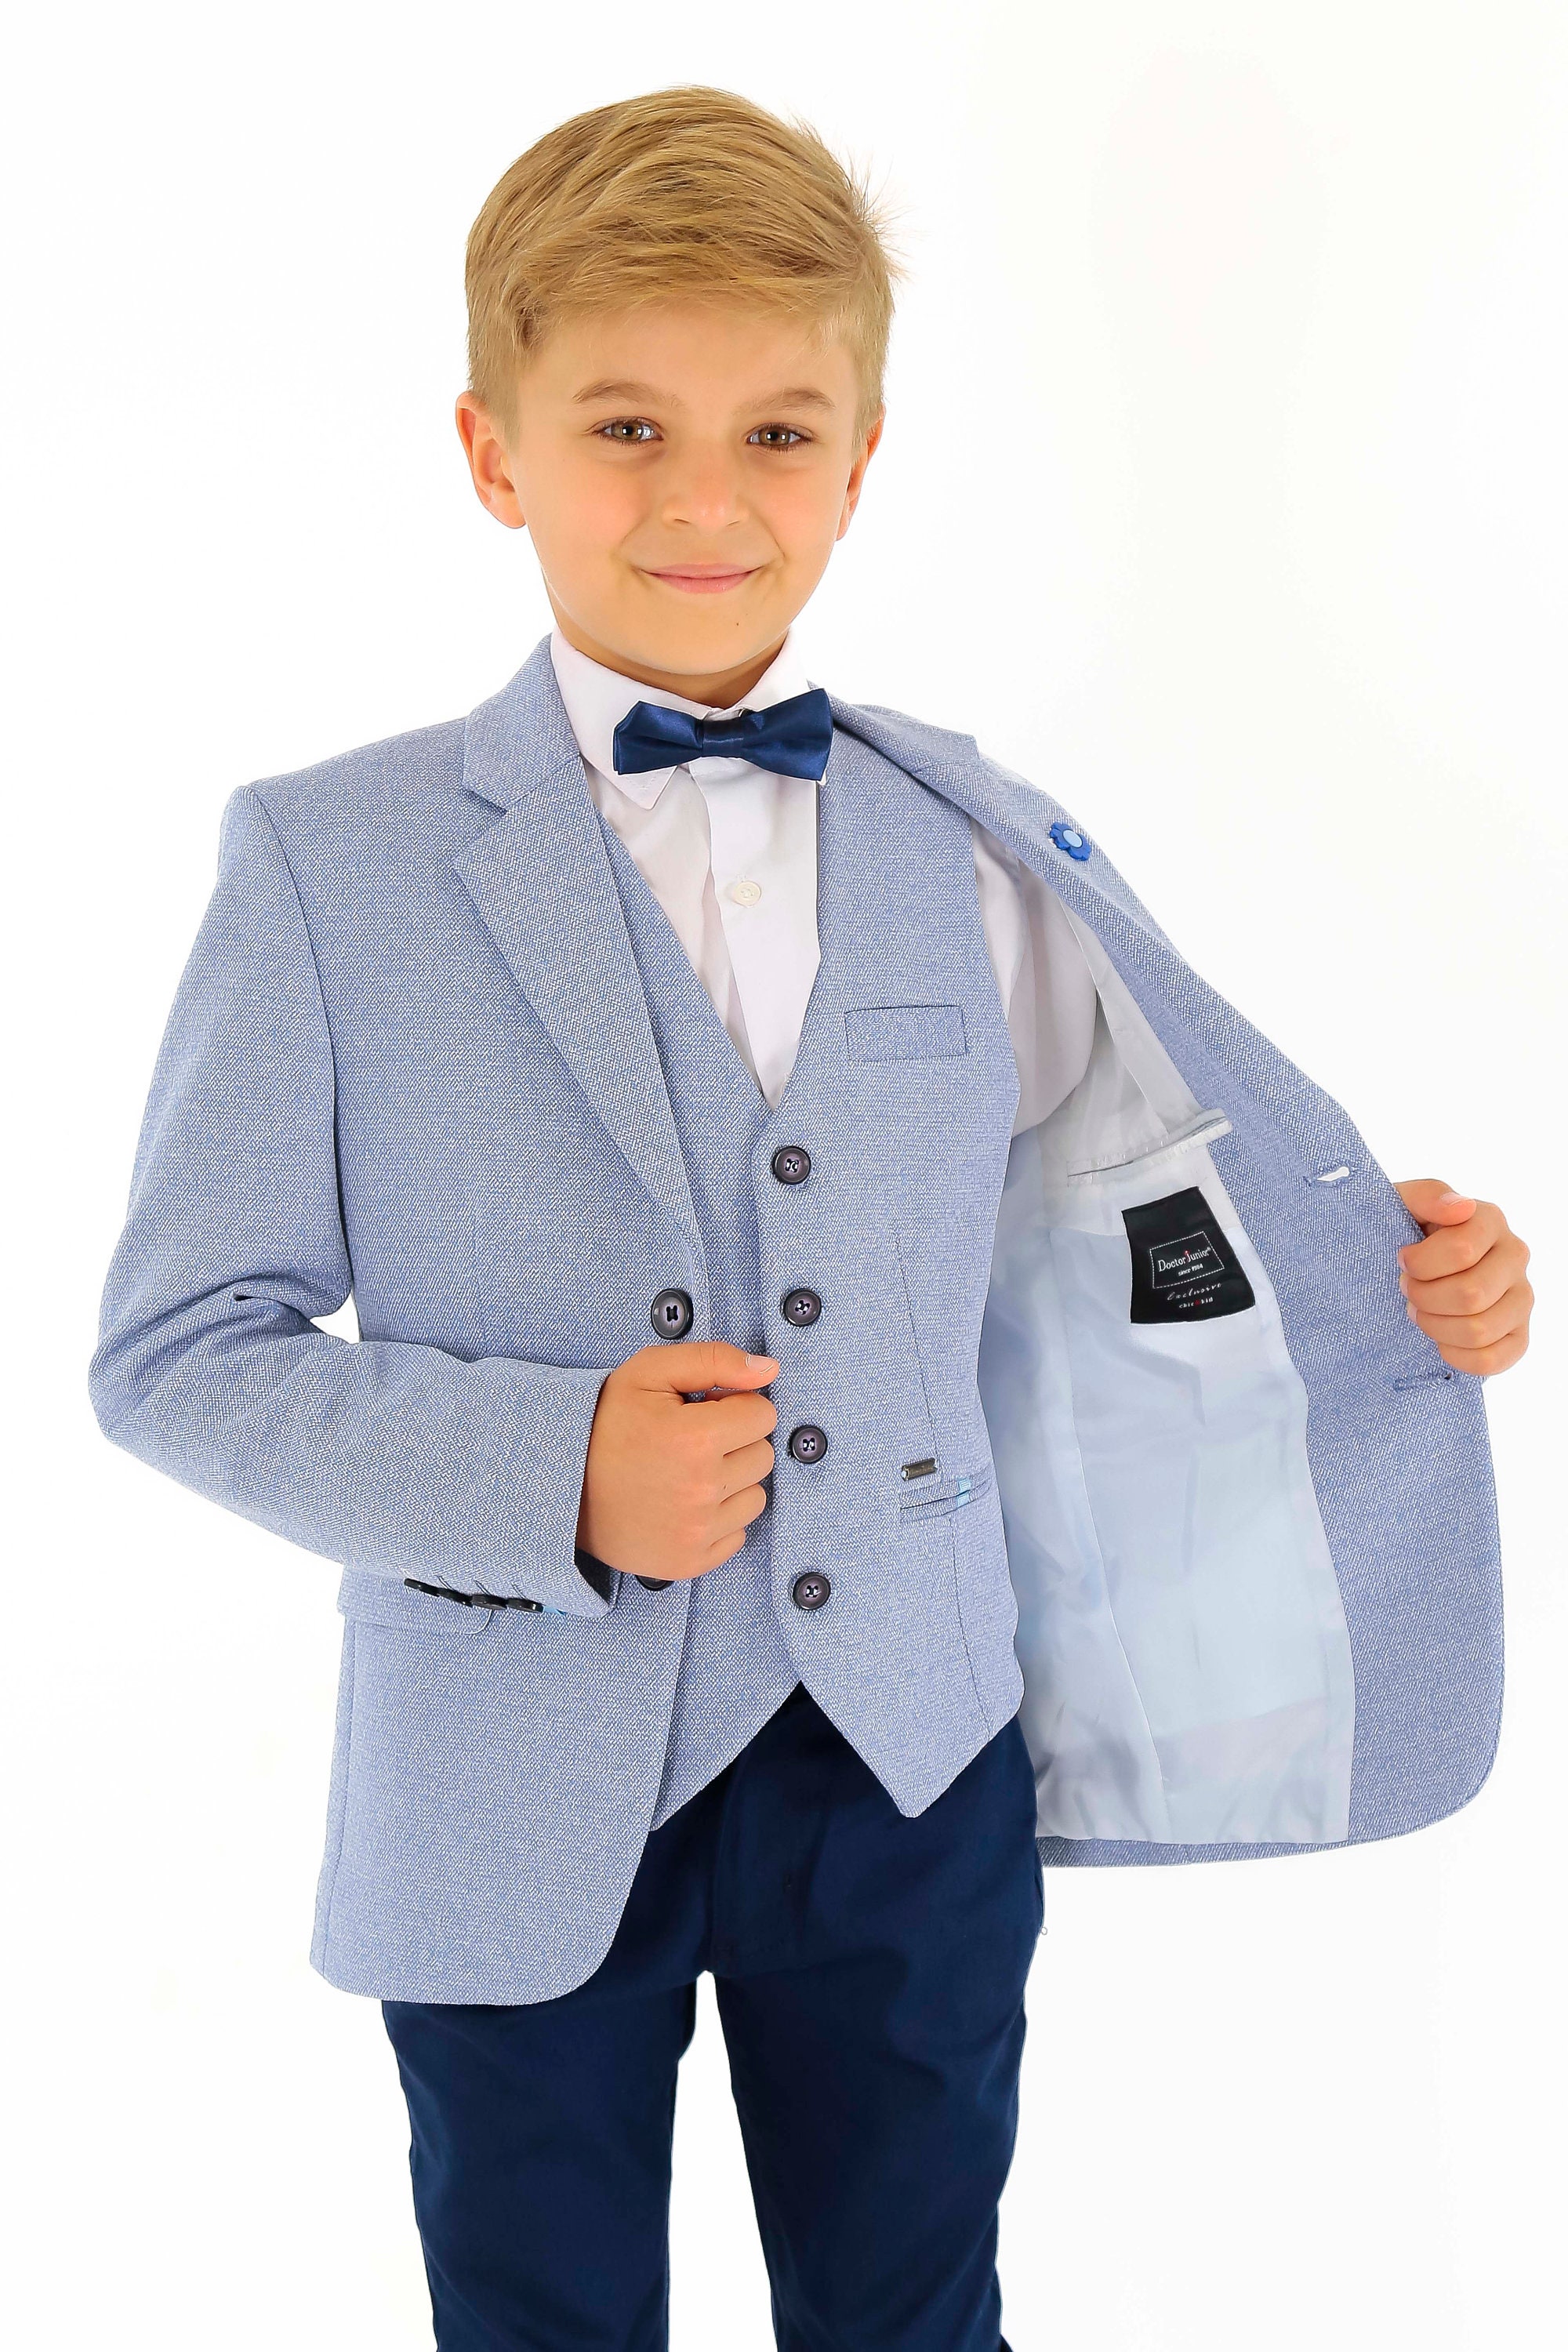 Chaqueta algodón para niño chaleco corte ajustado traje - Etsy